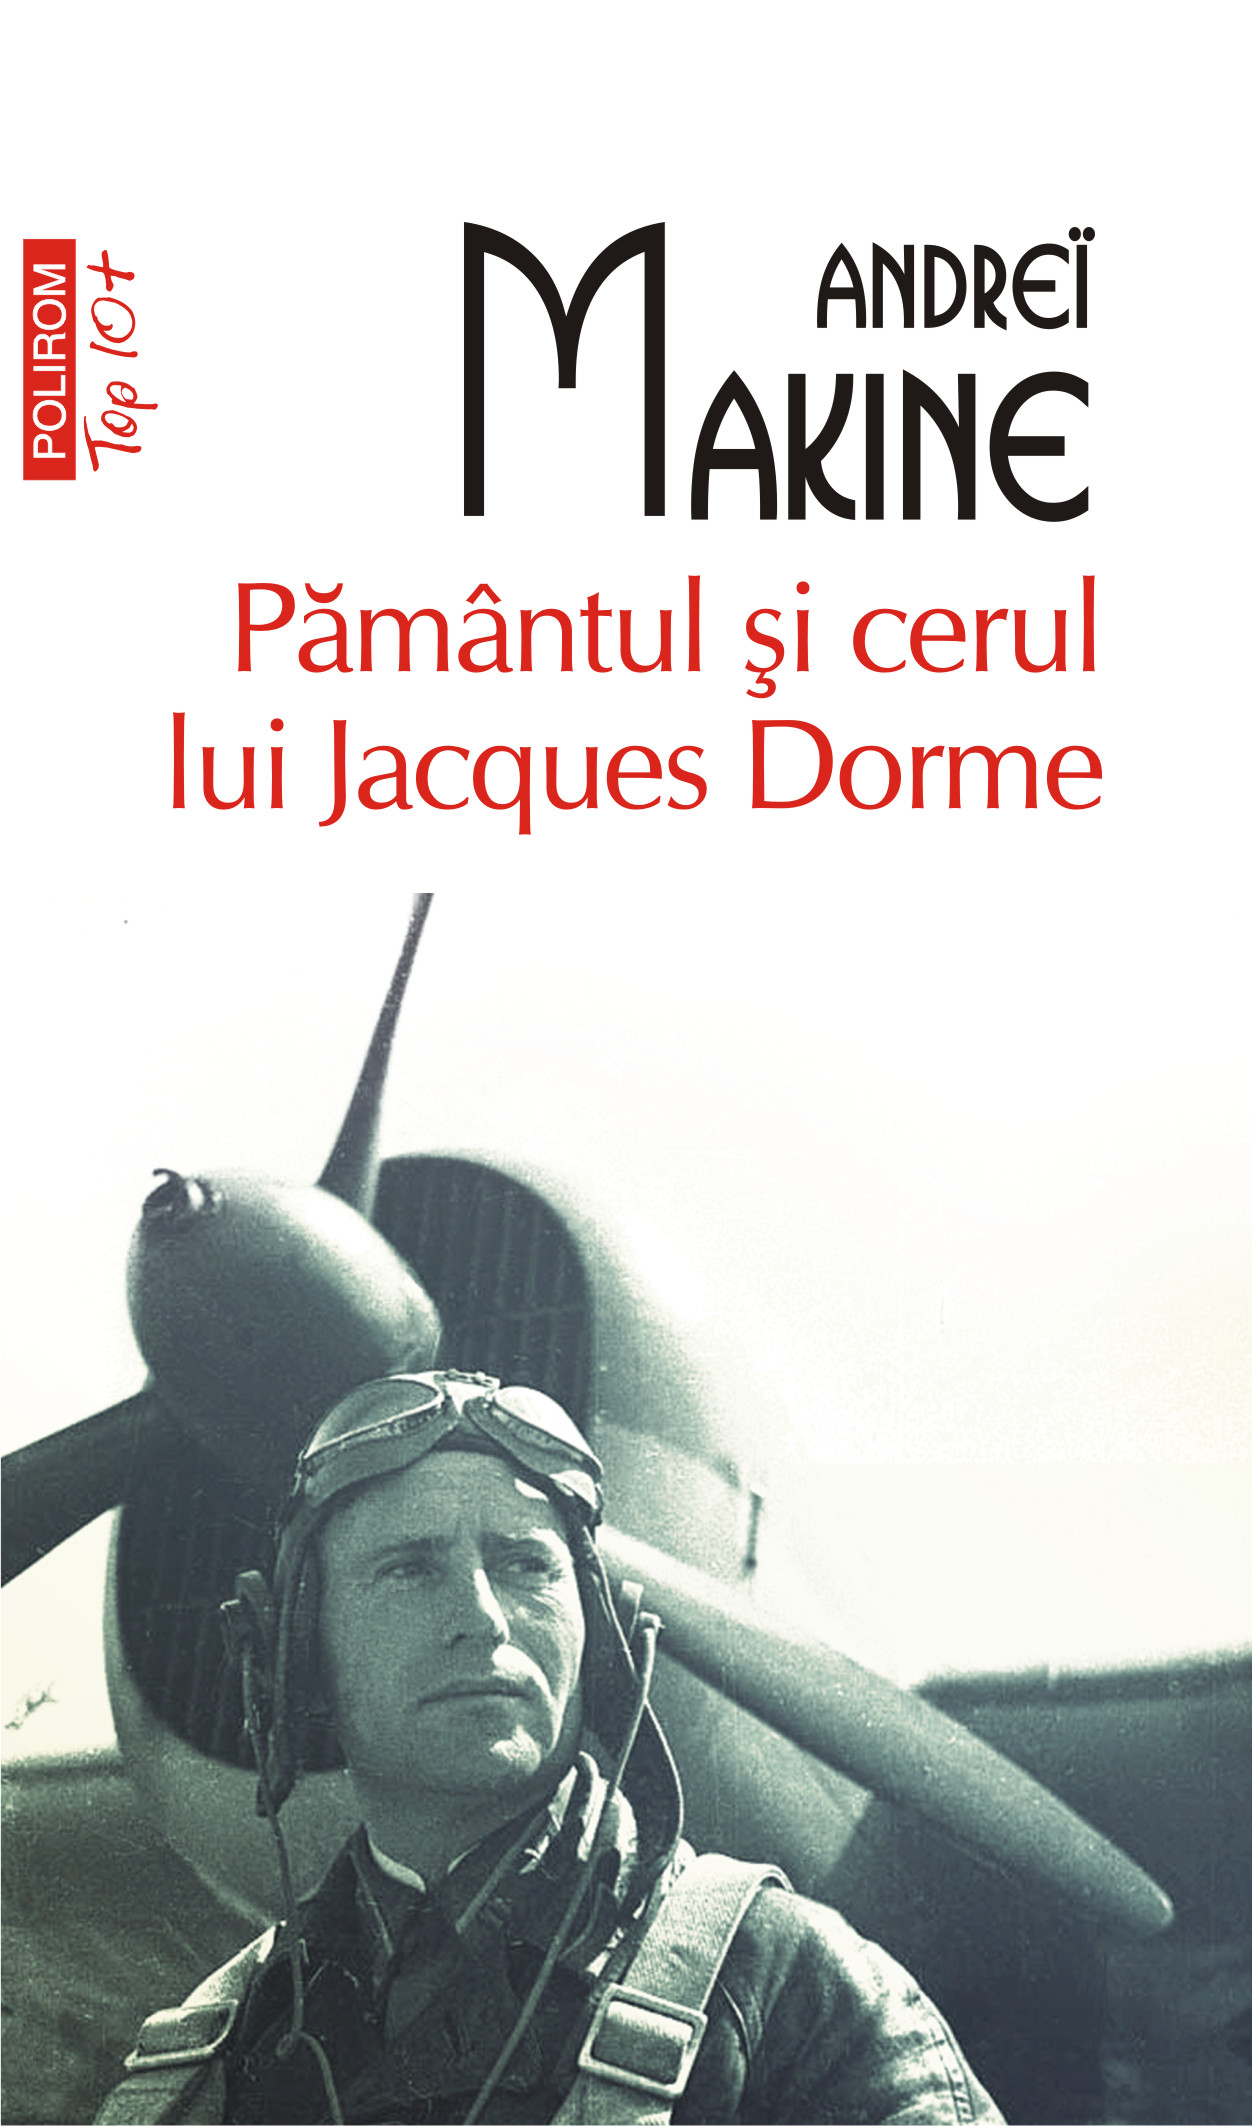 eBook Pamantul si cerul lui Jacques Dorme - Andrei Makine